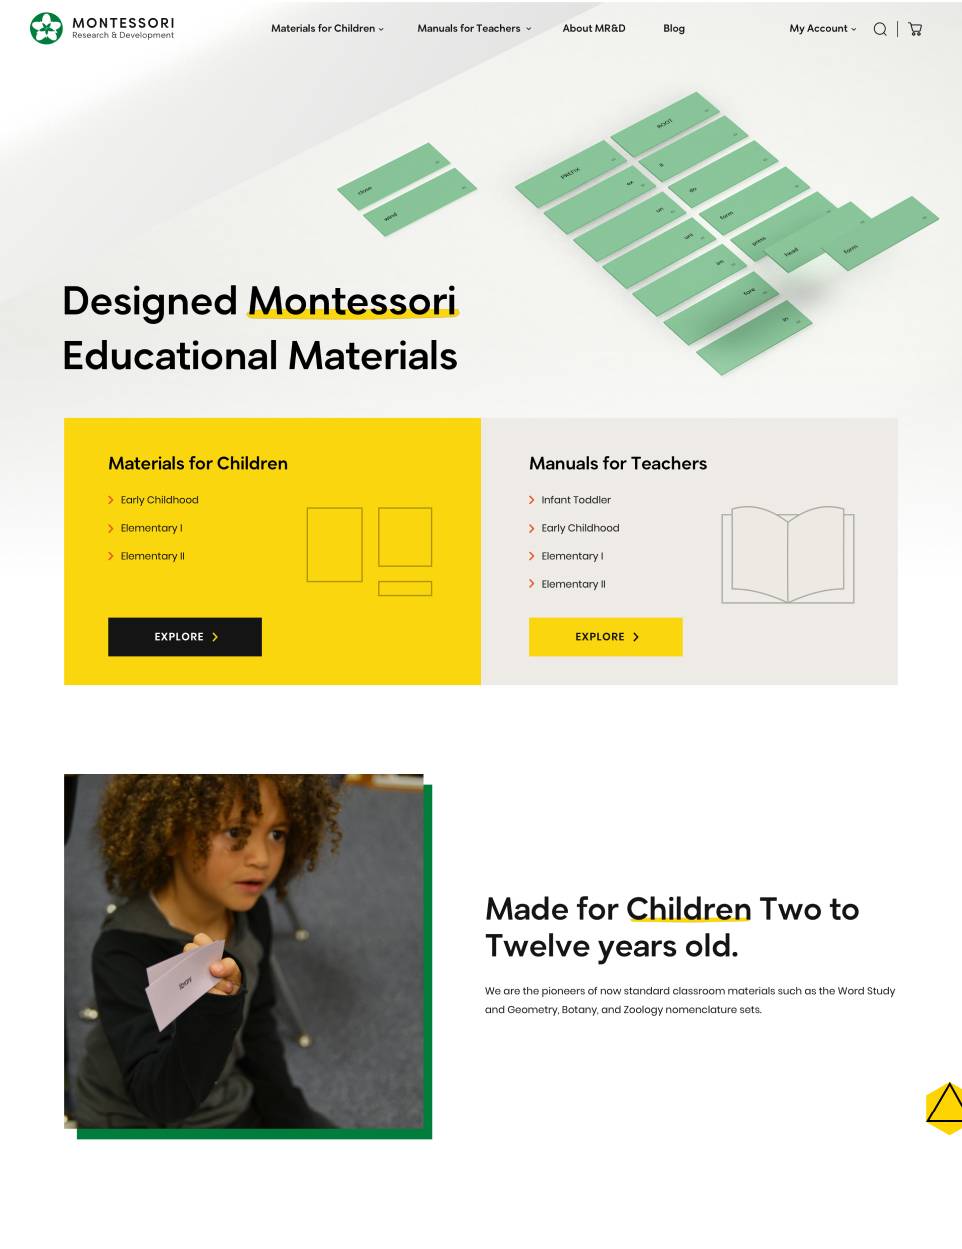 Montessori RD